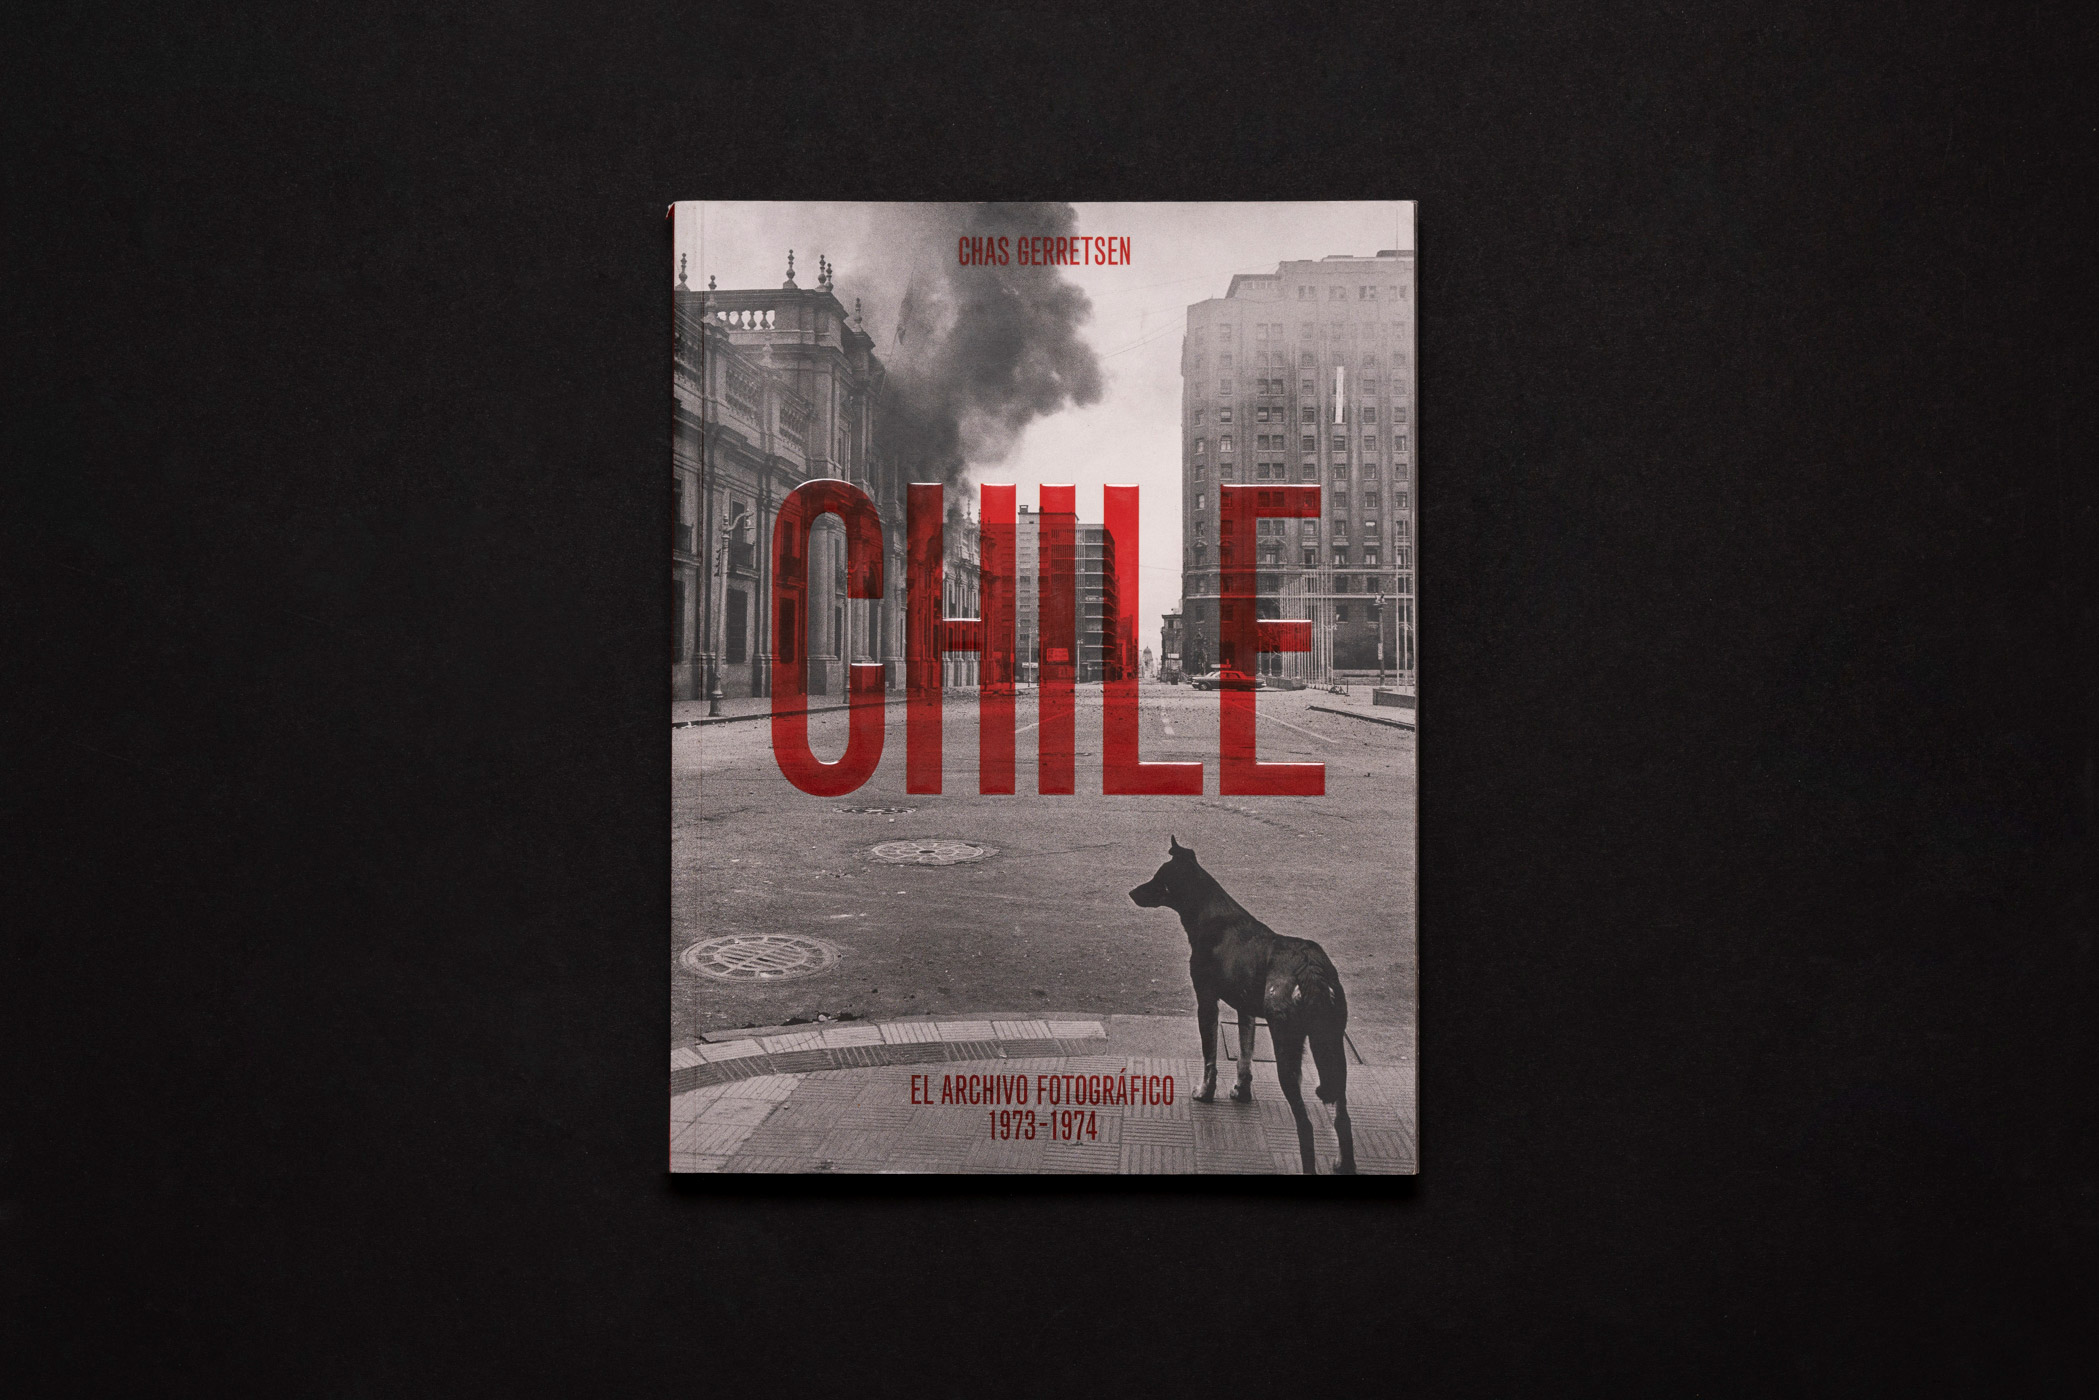 Chile. El archivo fotográfico 1973-74